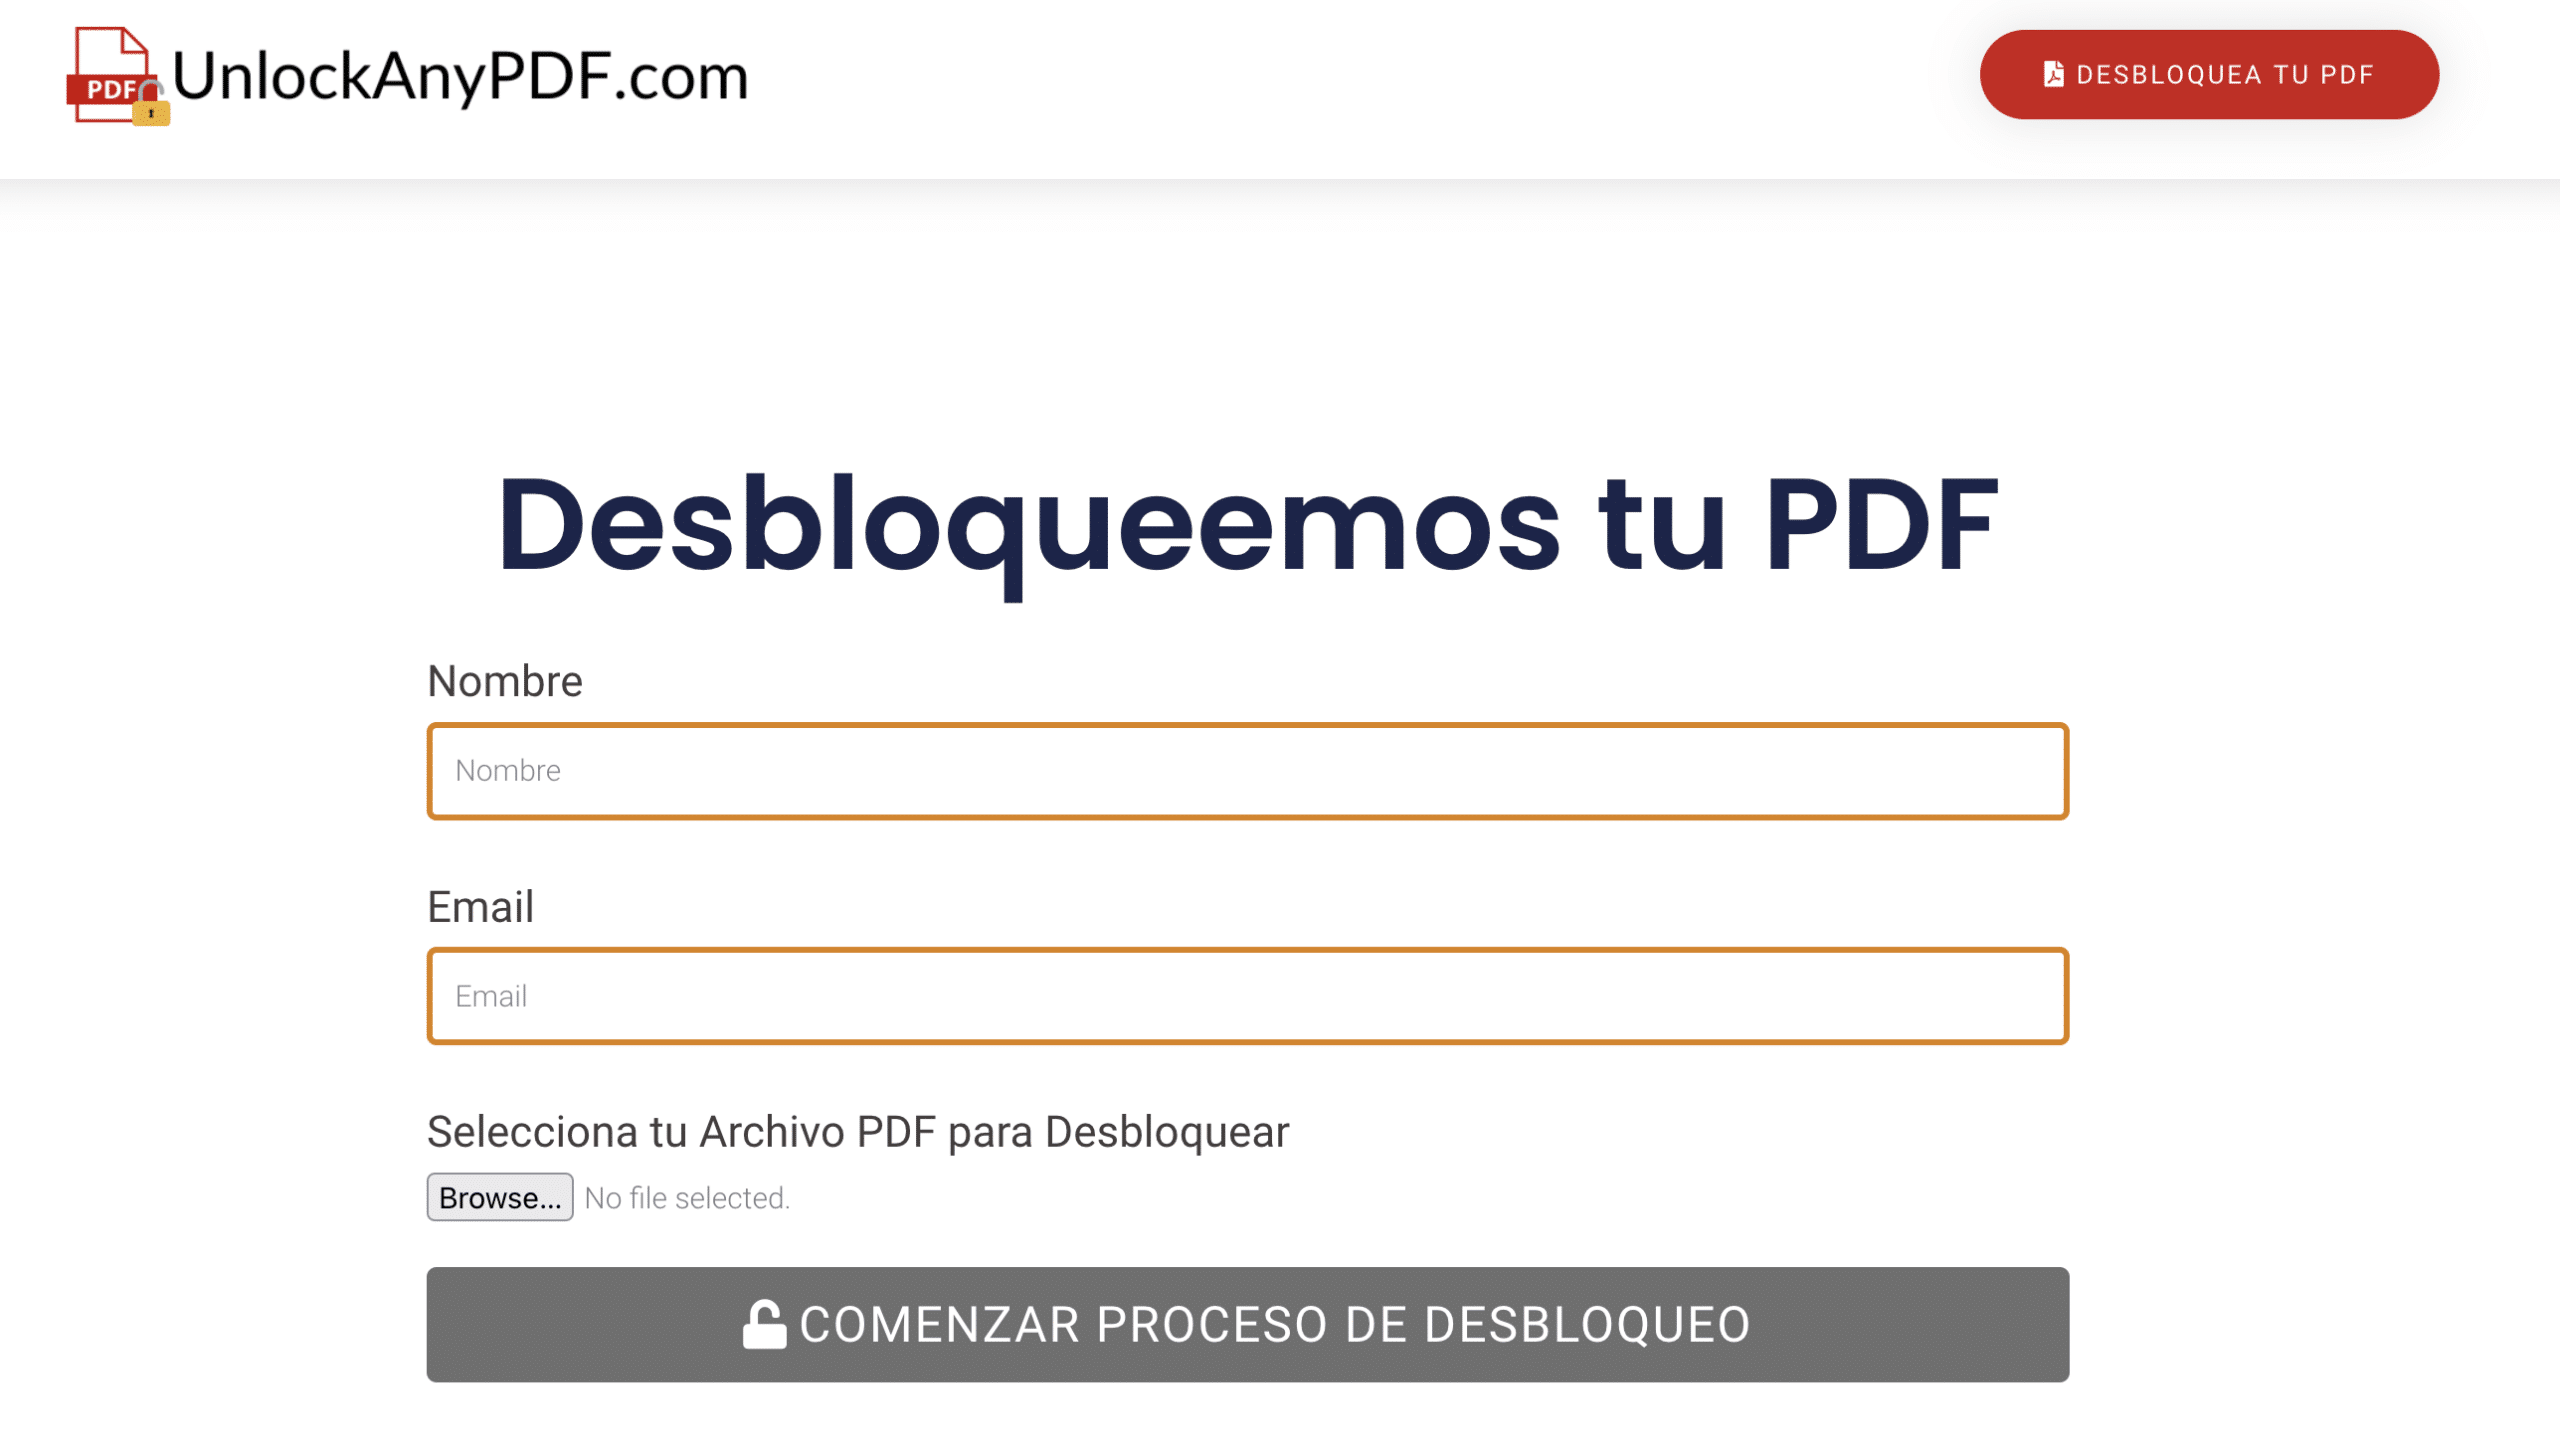 Entra a la plataforma para empezar el proceso de desbloqueo de tu archivo PDF protegido